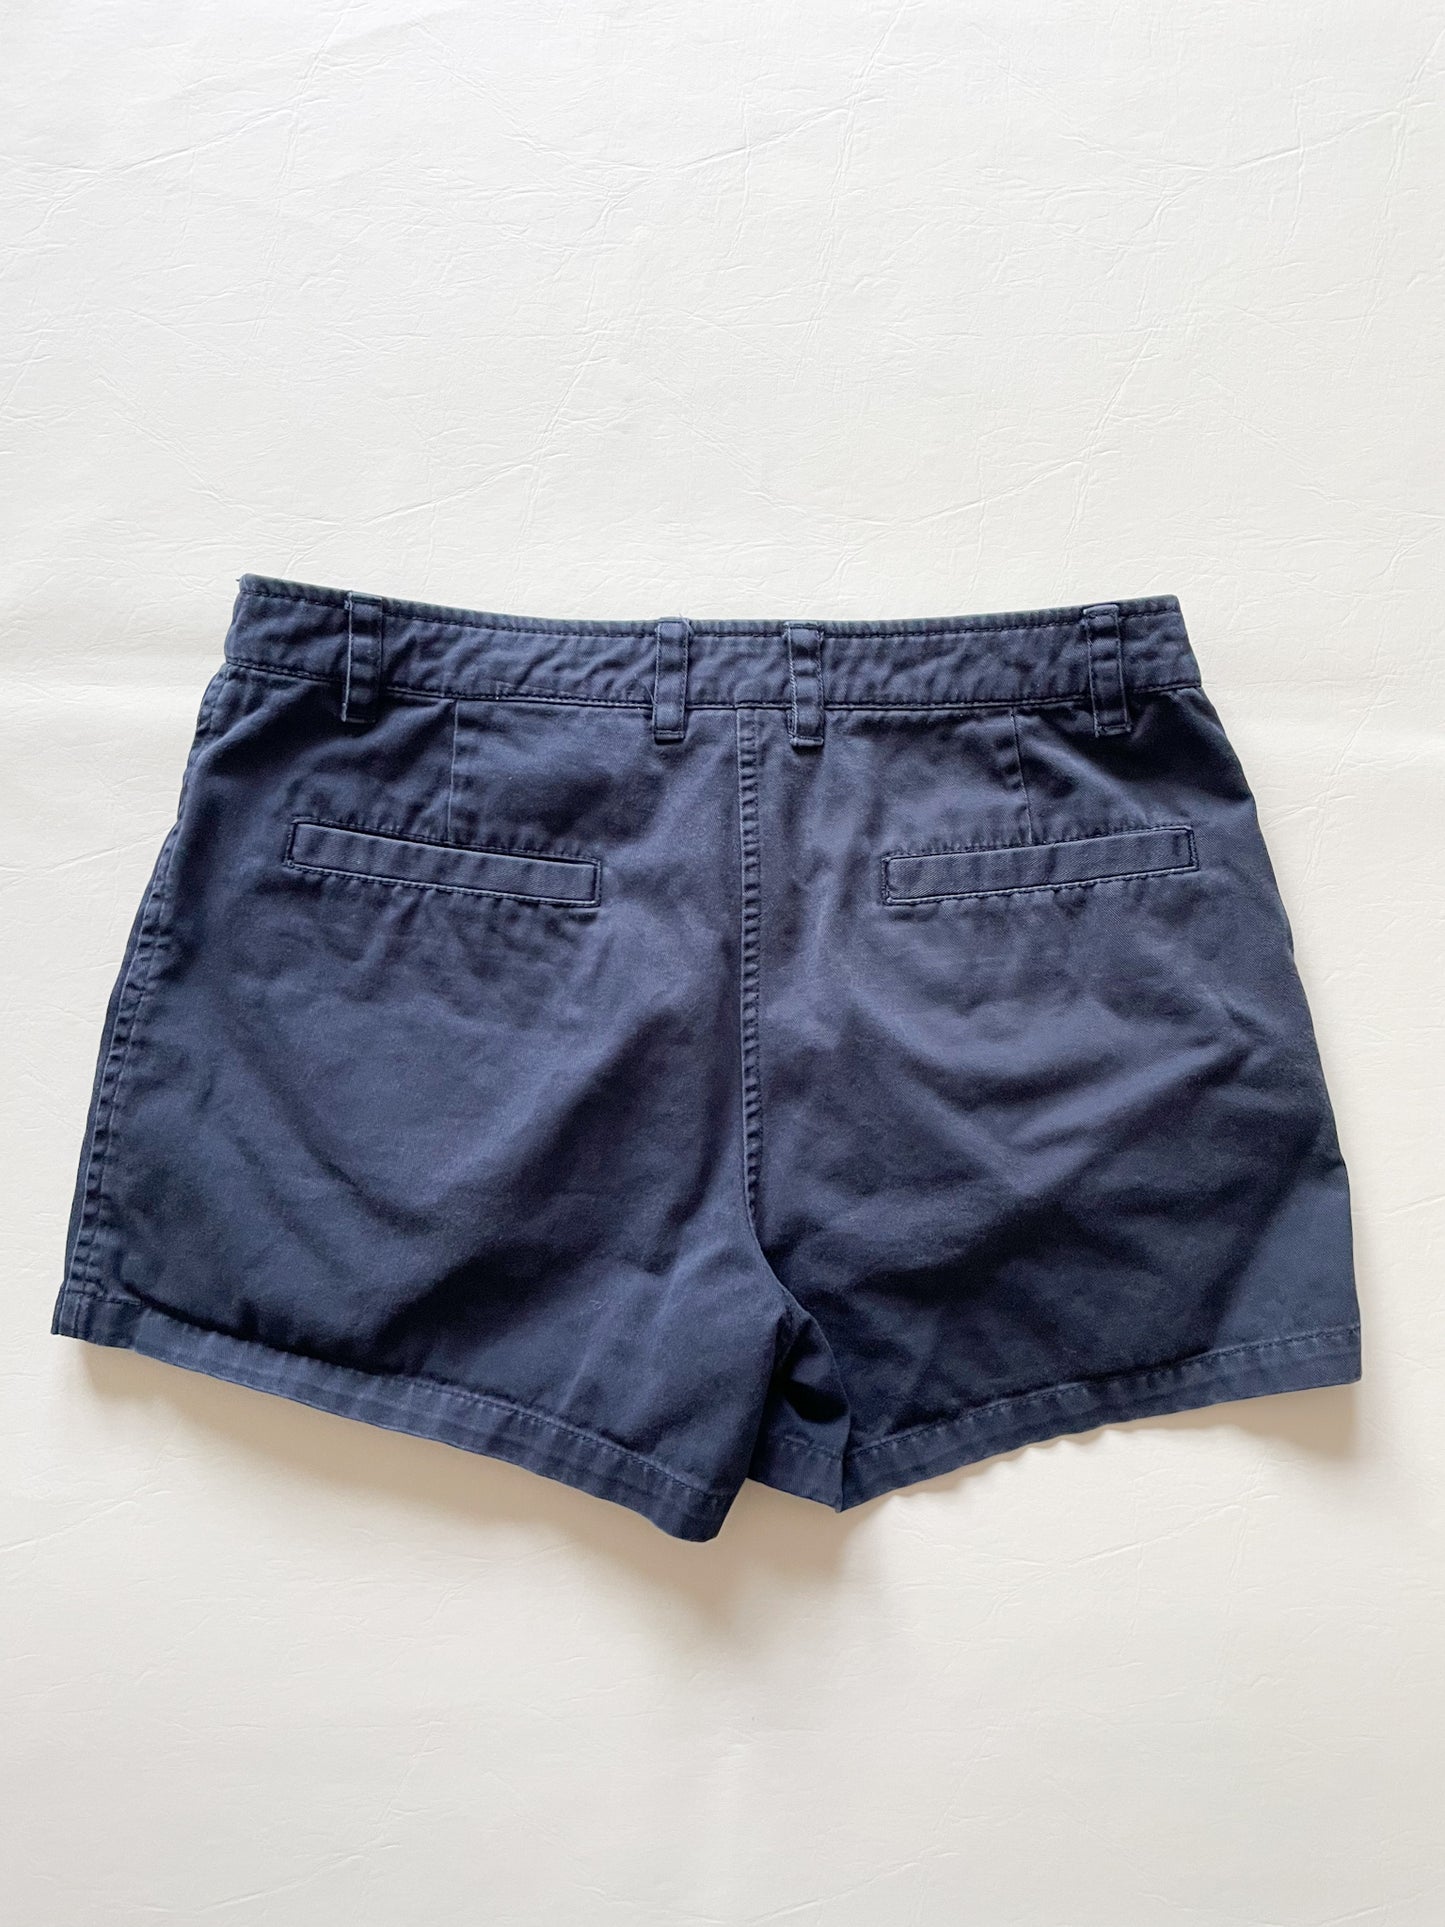 Jacob Annex Navy 100% Cotton Mid Rise Shorts - Size 3/4